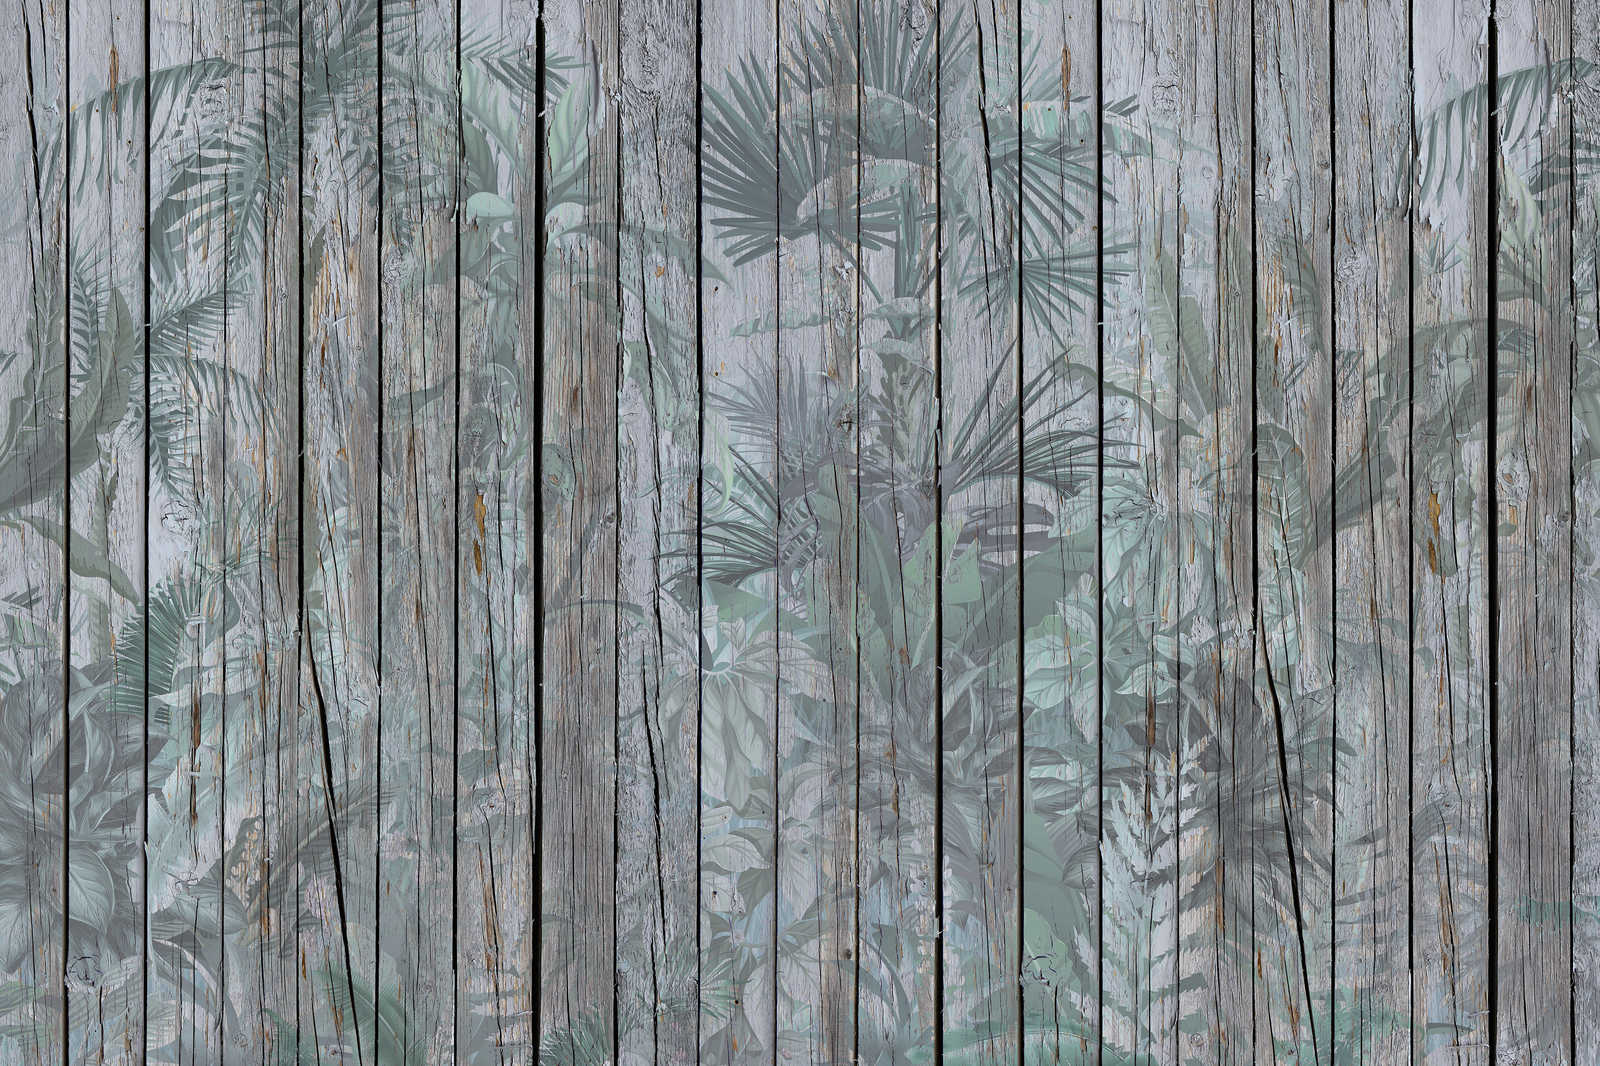             Quadro su tela Parete in legno con piante della giungla - 0,90 m x 0,60 m
        